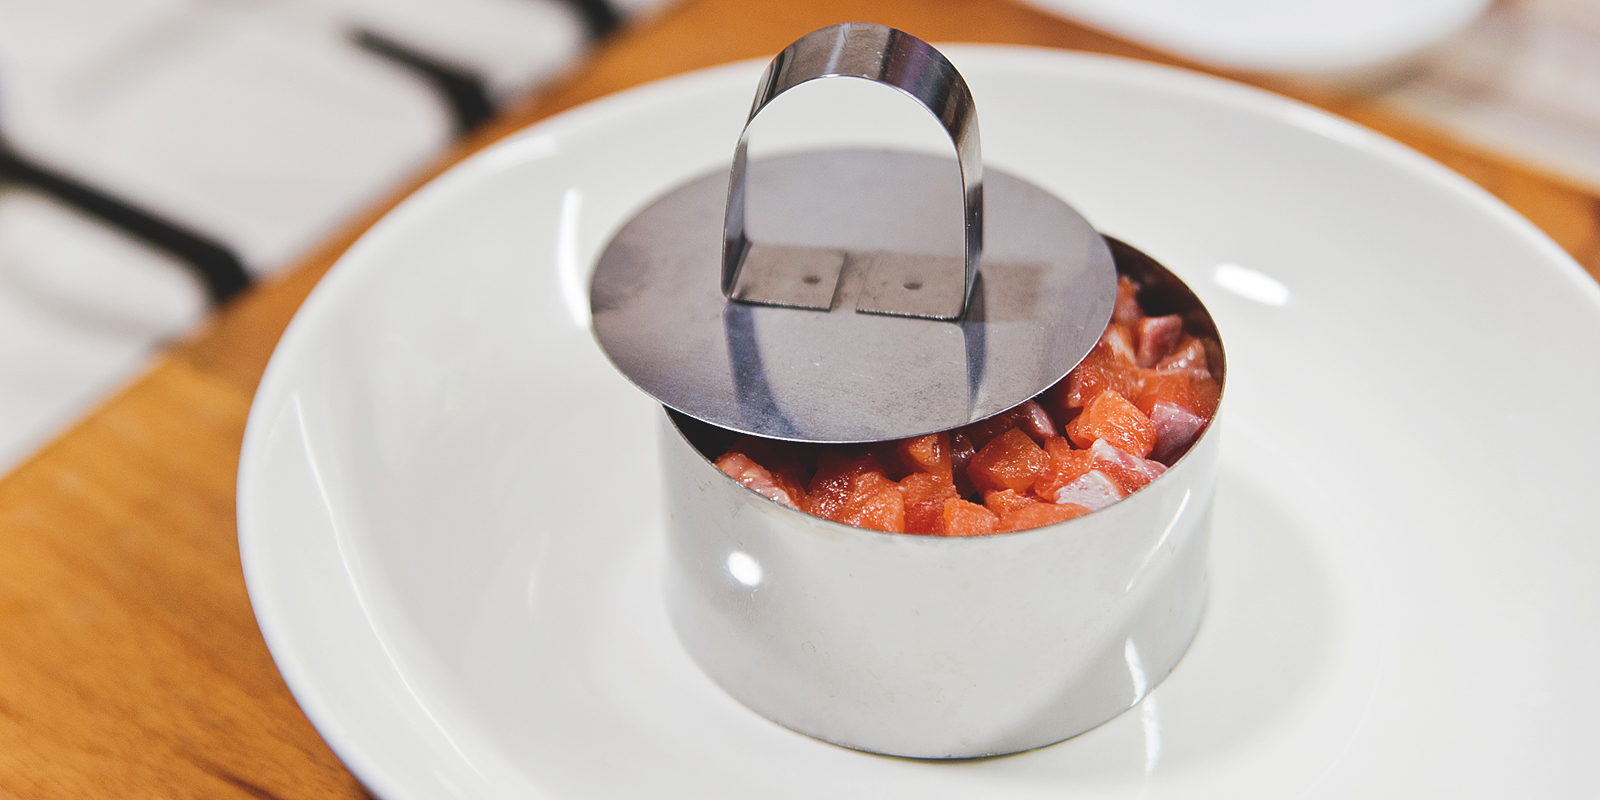 Простой тартар из лосося с красной икрой: с помощью кулинарного кольца сформируйте тартар